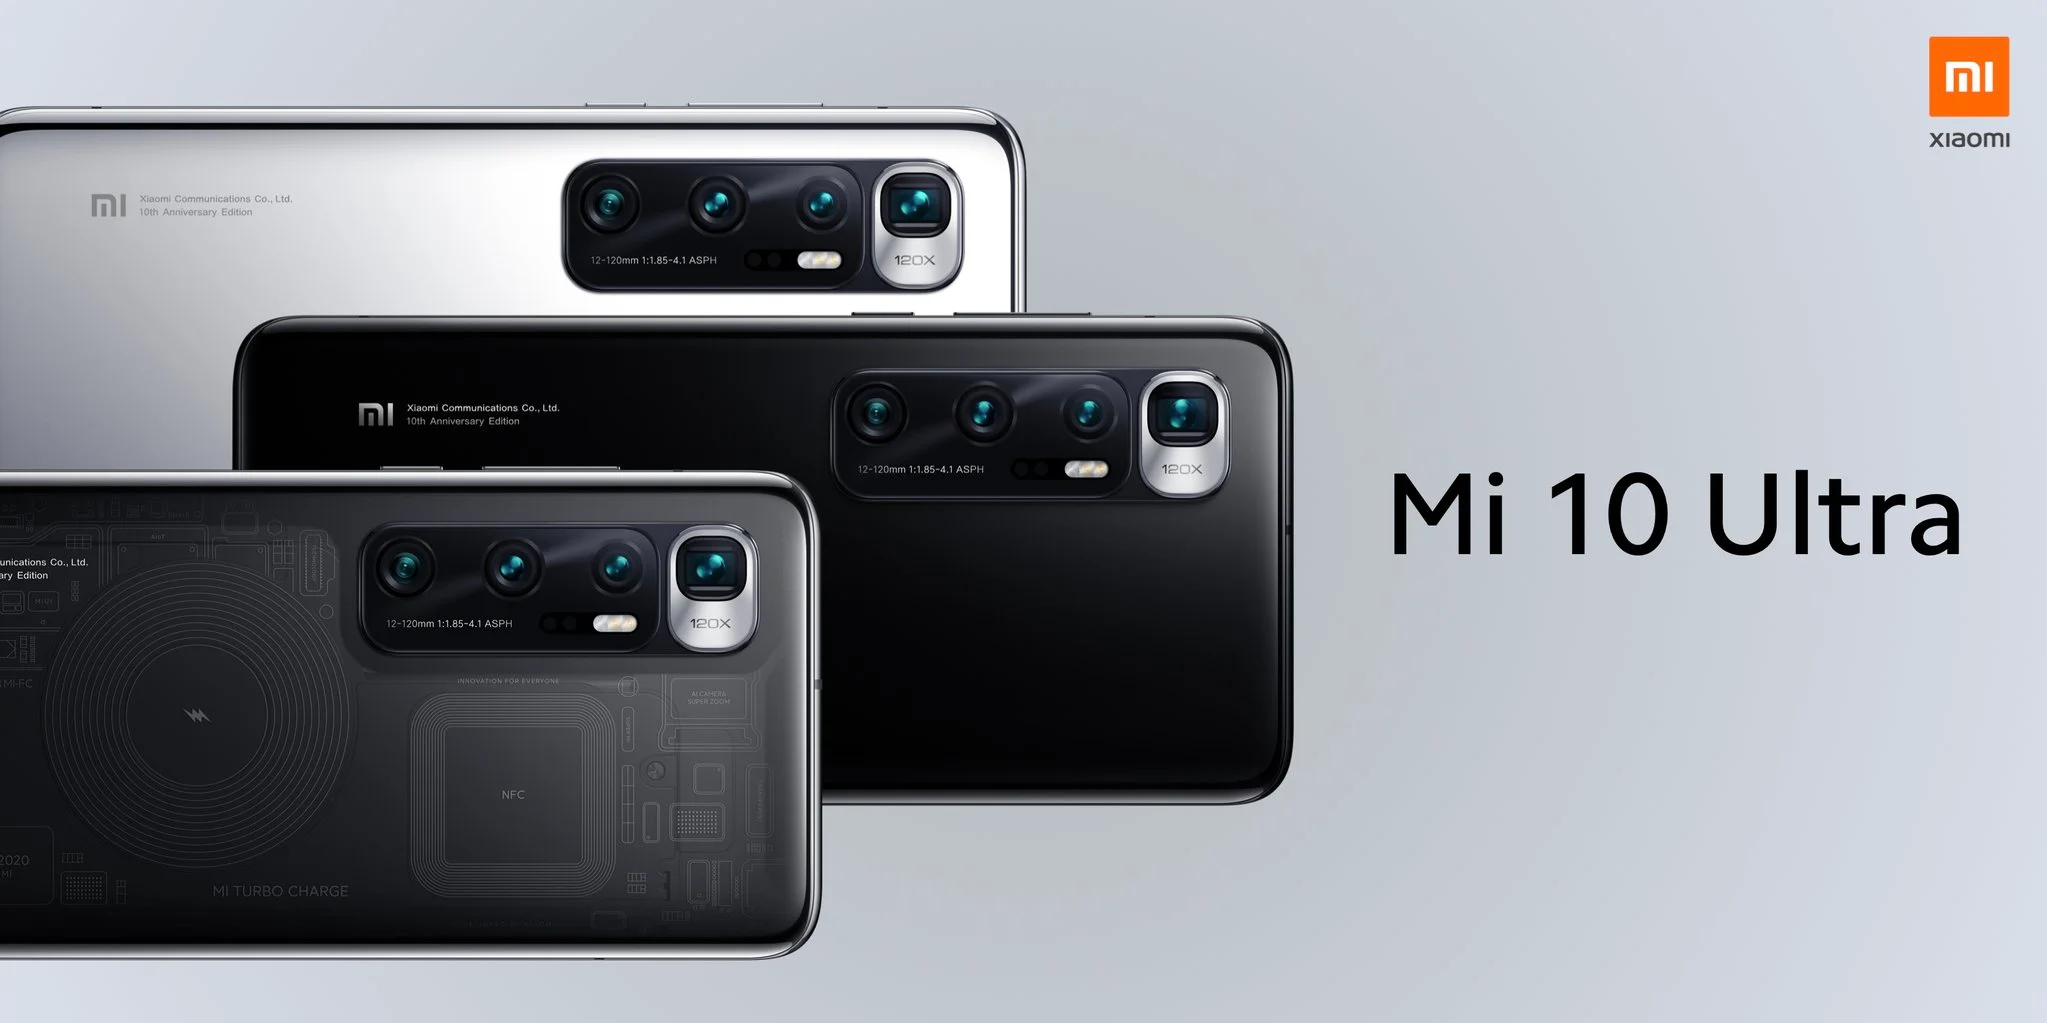 Представлен Xiaomi Mi 10 Ultra — флагман с лучшими камерами на рынке и зарядкой 120 Вт - фото 1